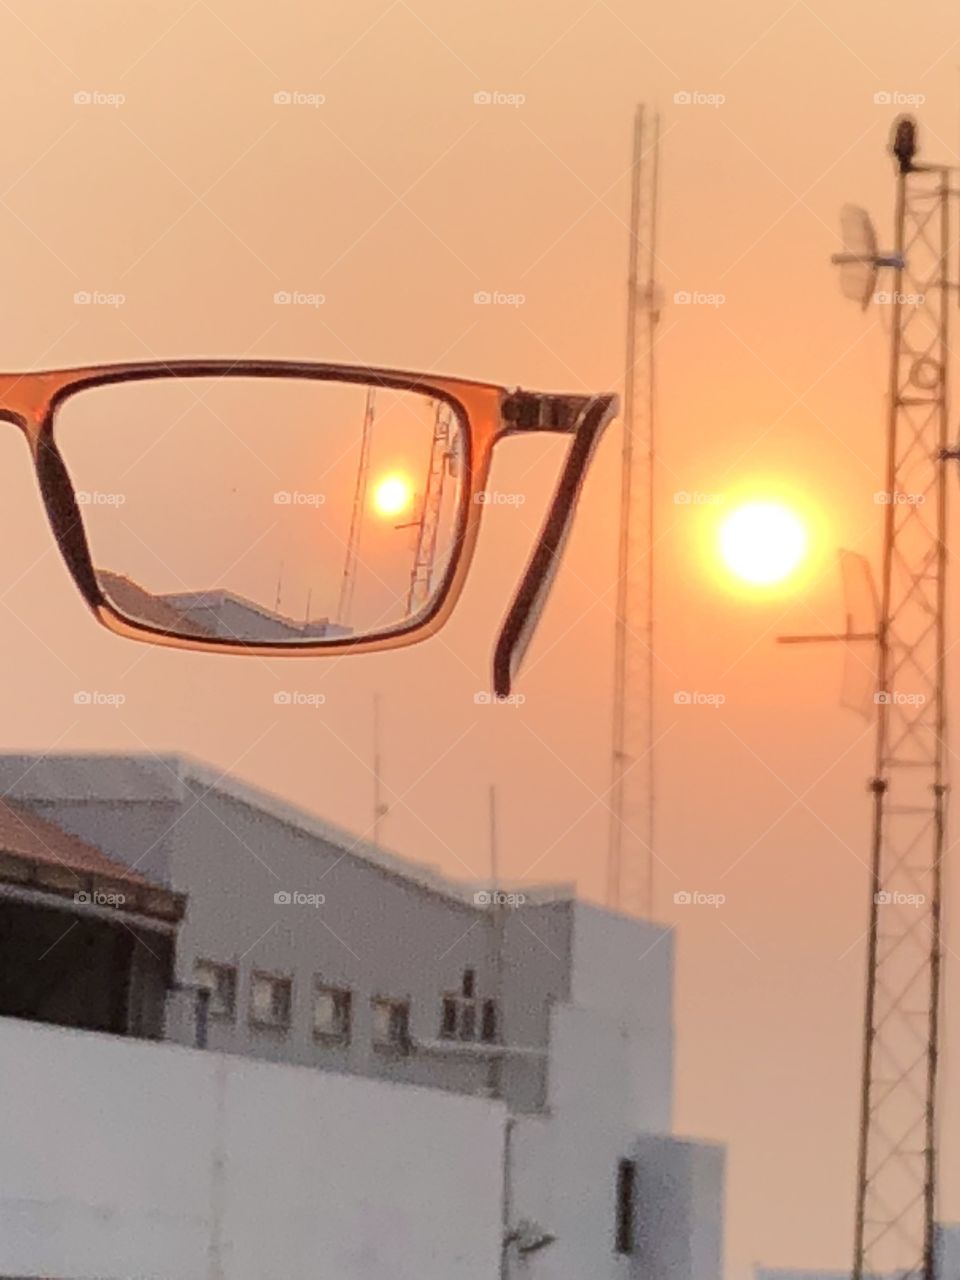 Sunlight glasses 